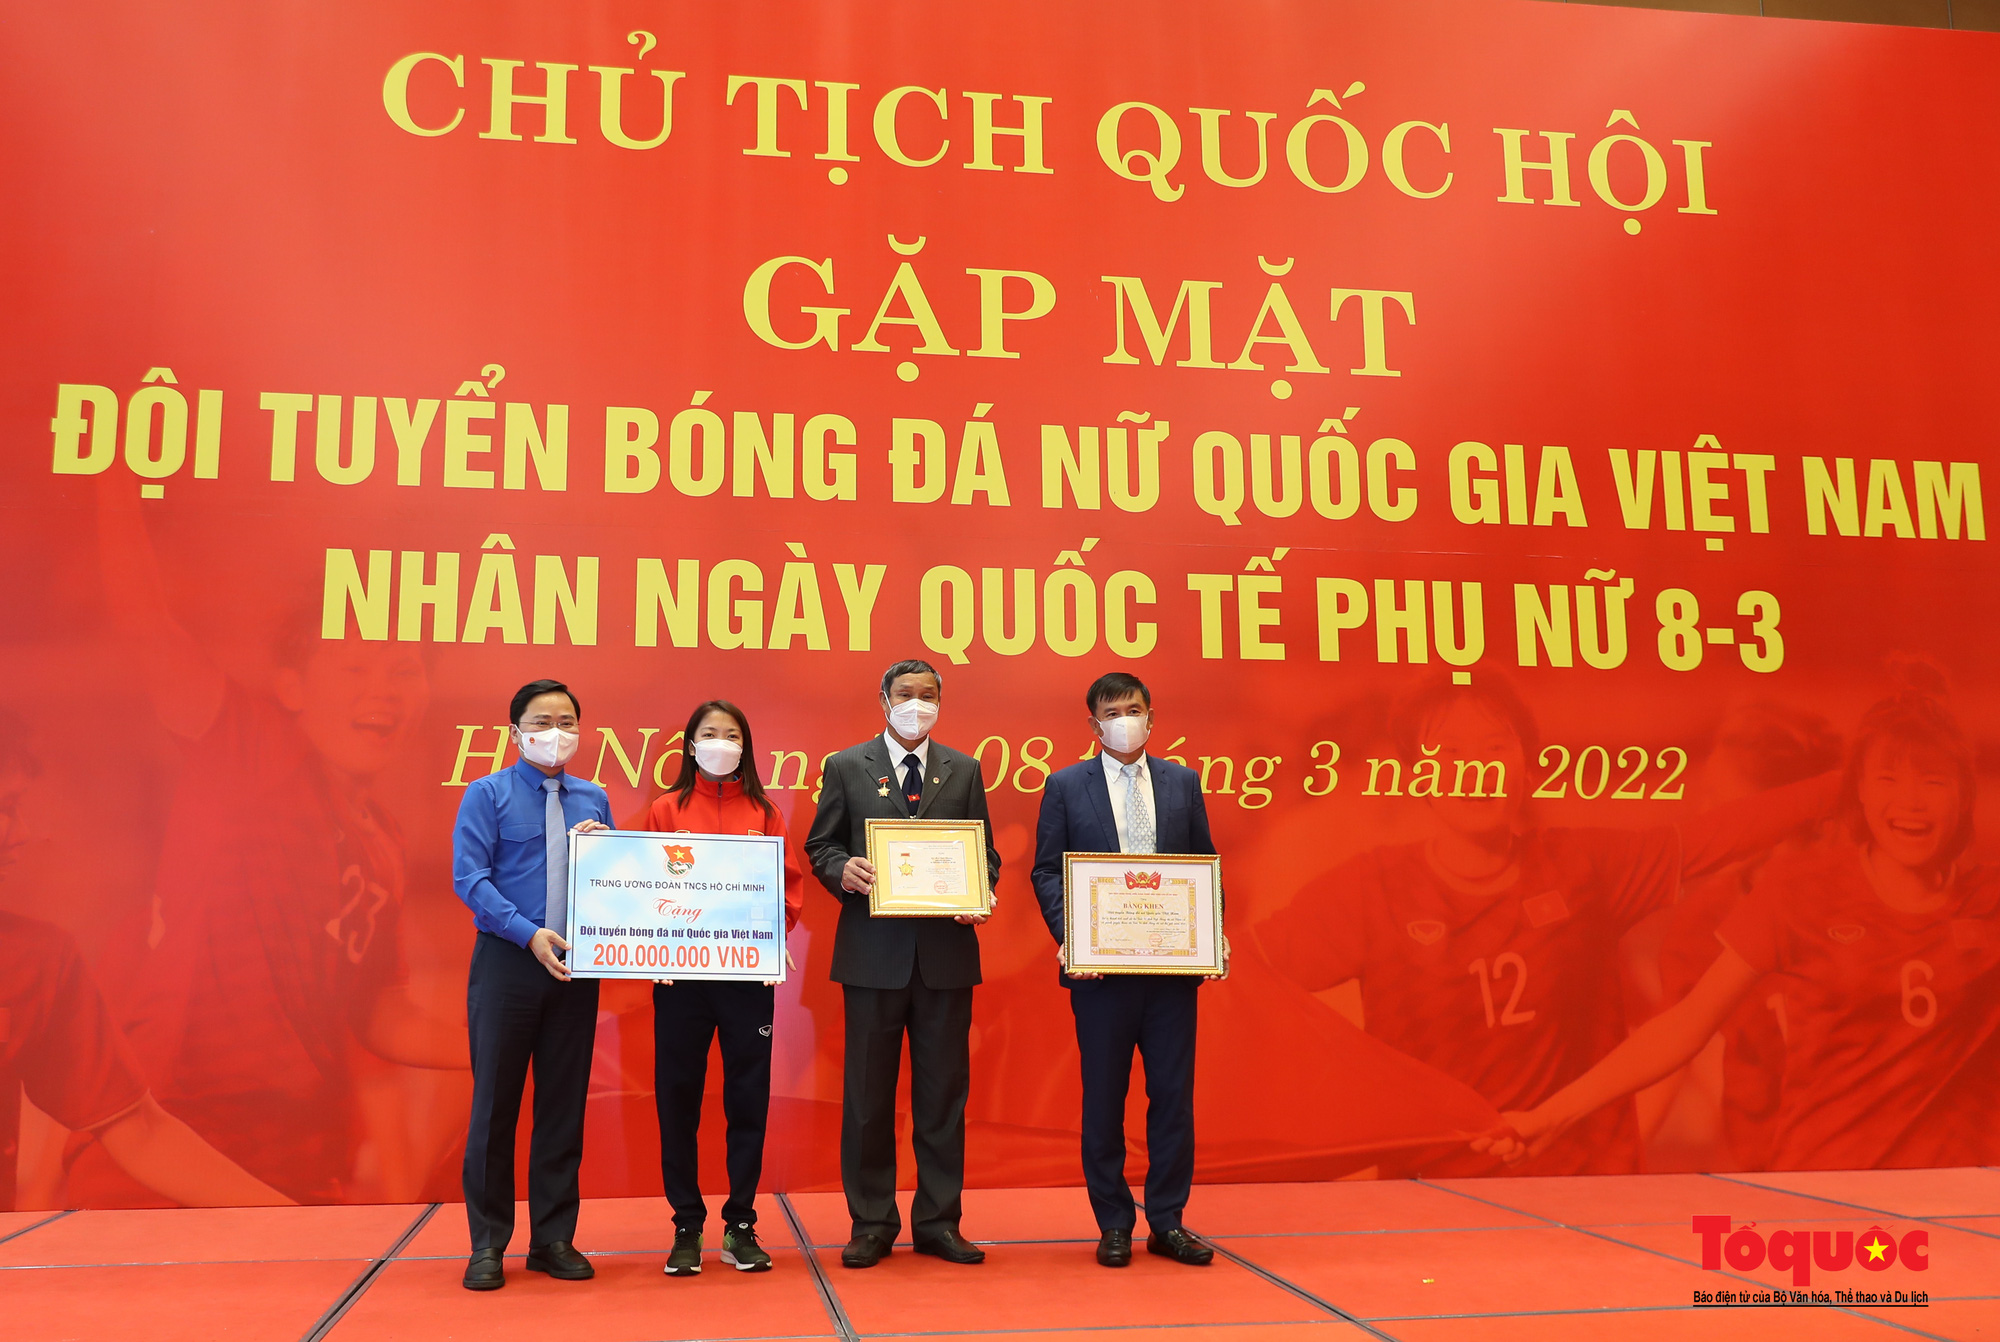 Chủ tịch Quốc hội Vương Đình Huệ gặp mặt Đội tuyển Bóng đá nữ Việt Nam - Ảnh 18.